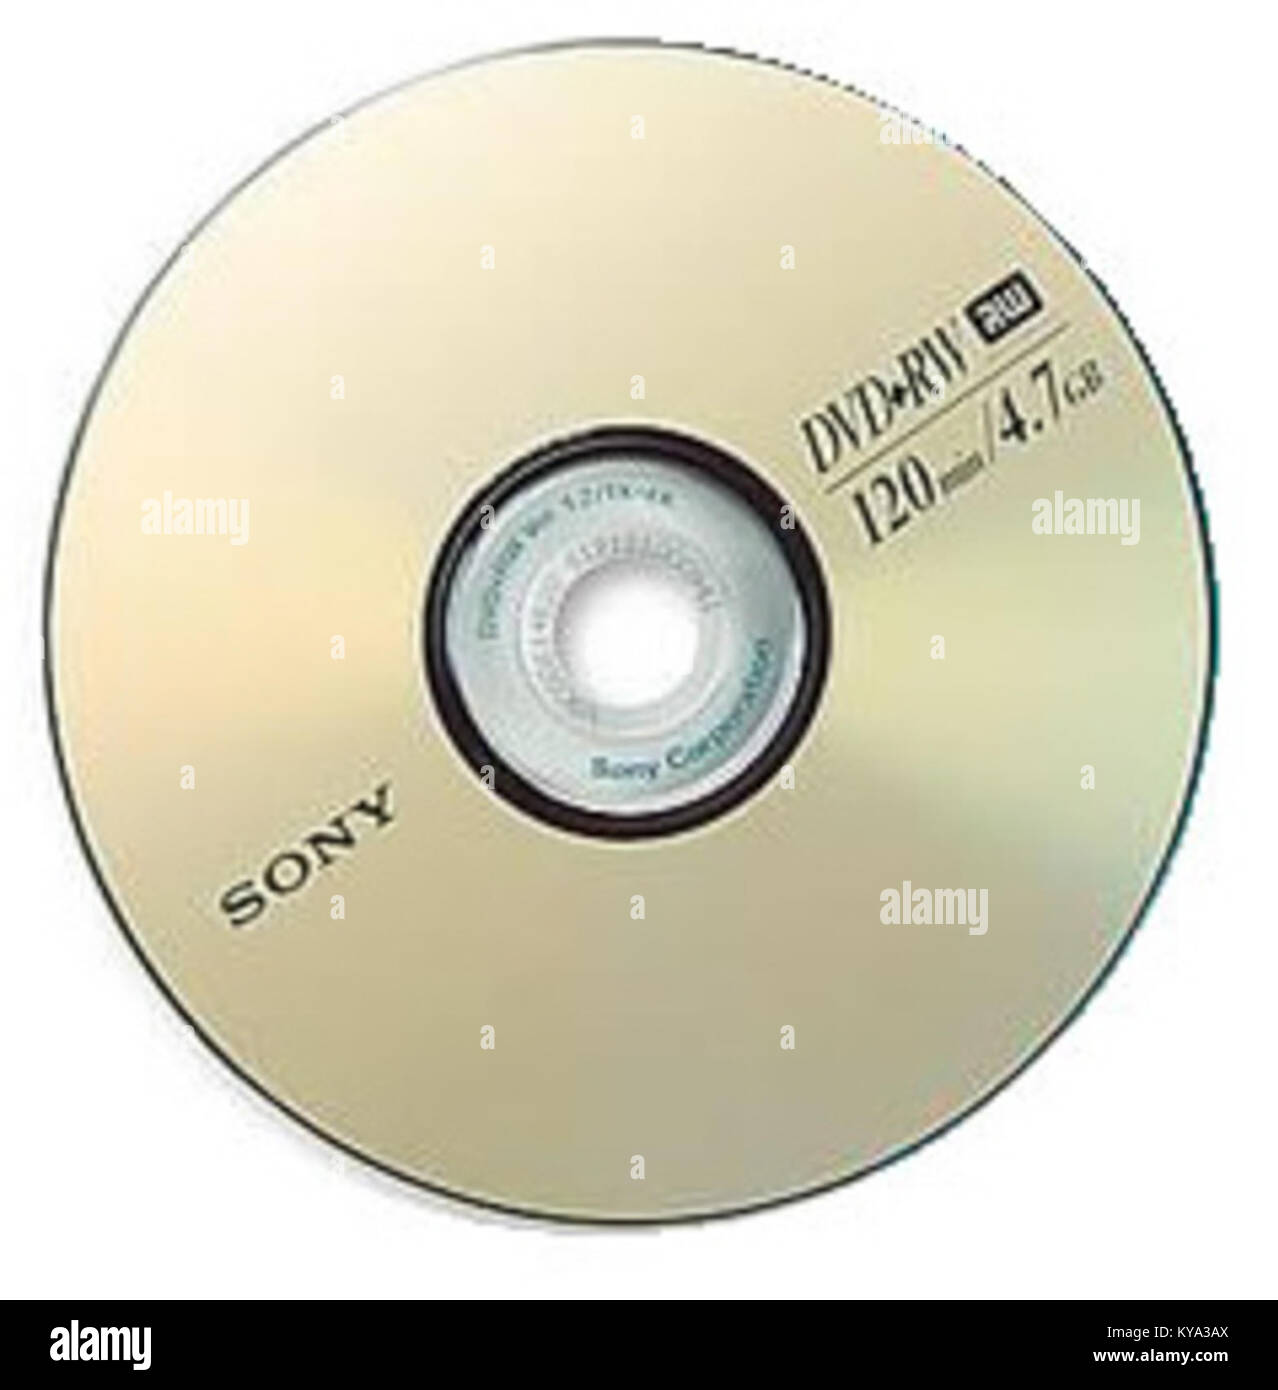 Sony DVD+RW Stock Photo - Alamy